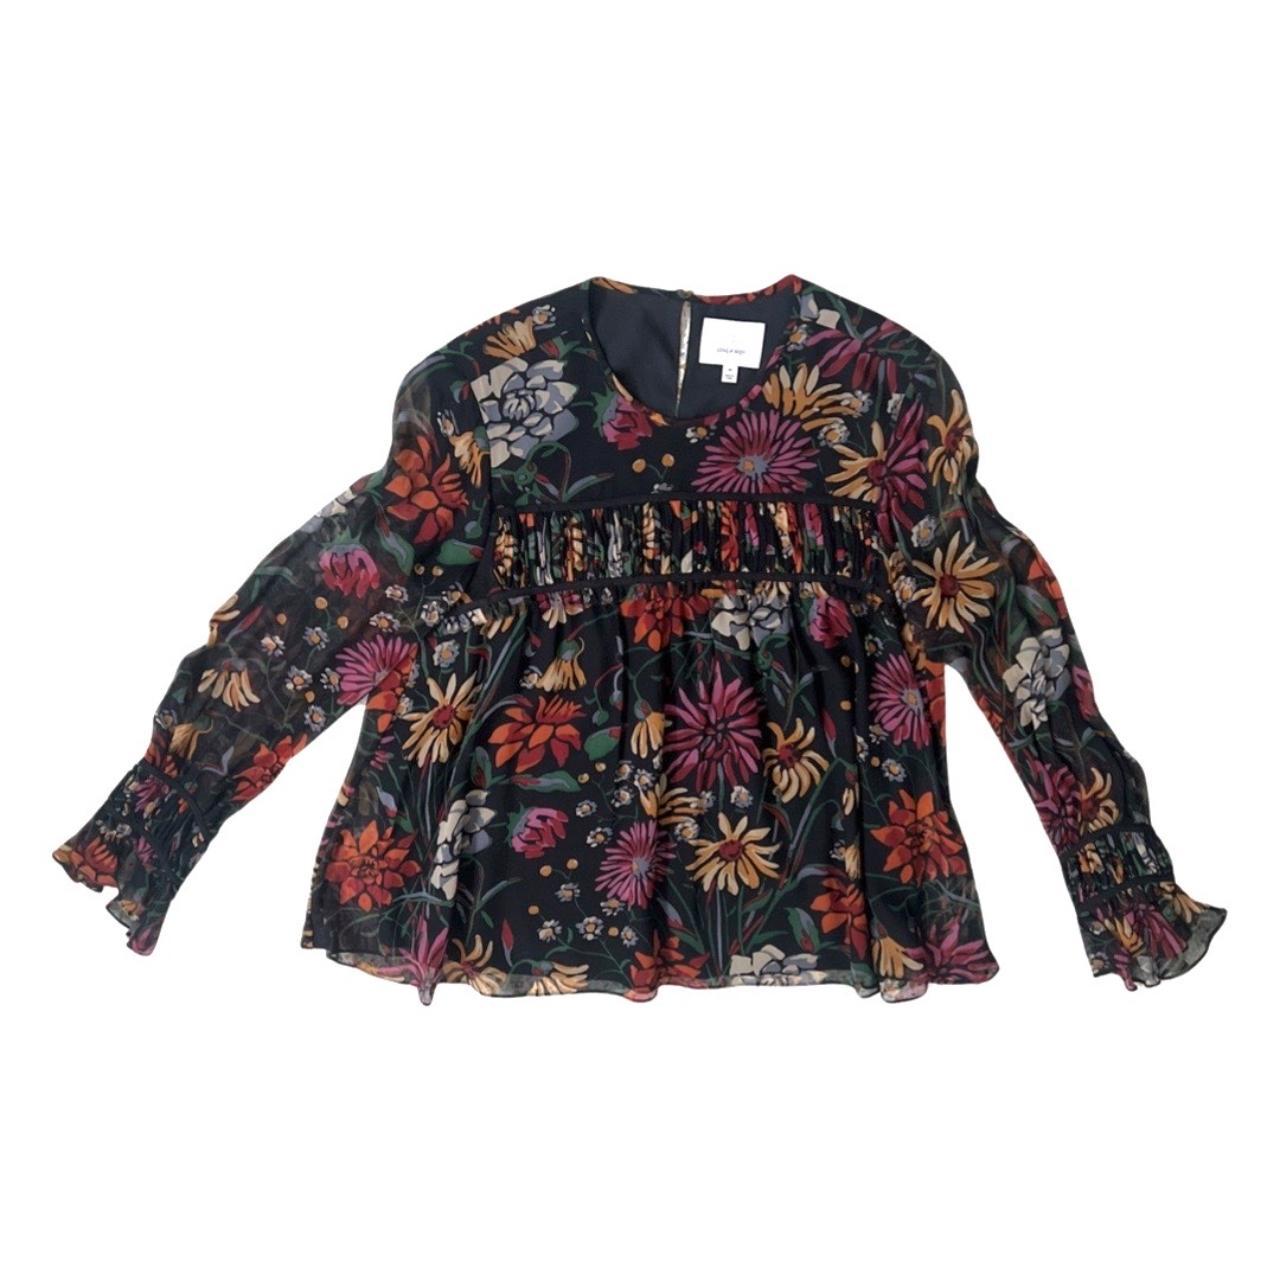 Cinq à Sept silk floral print blouse size M / KILOP... - Depop